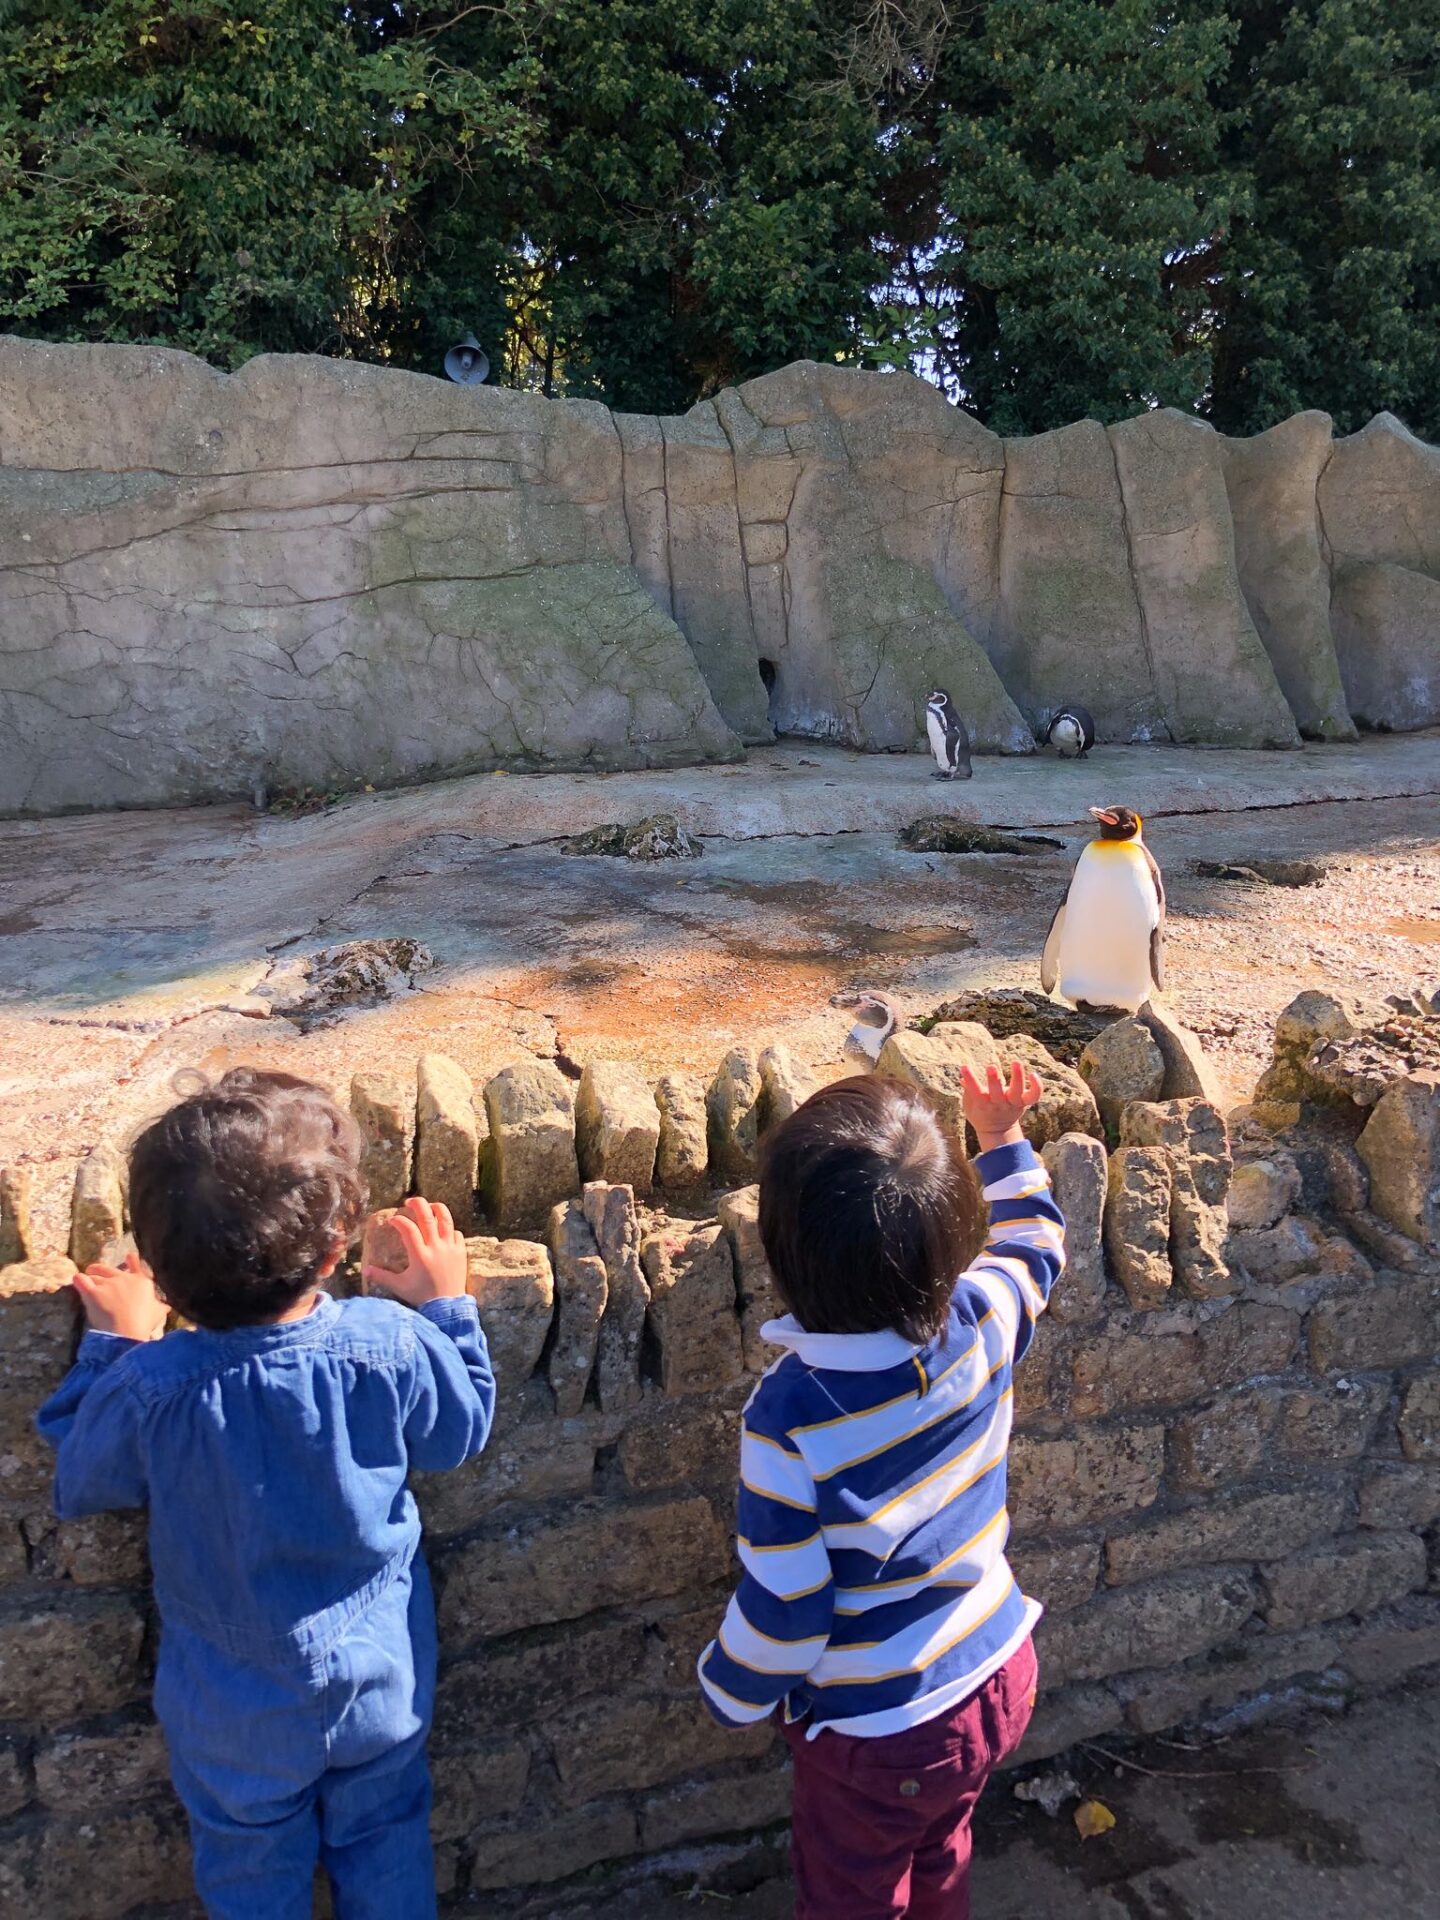 Penguins at Birdland Park